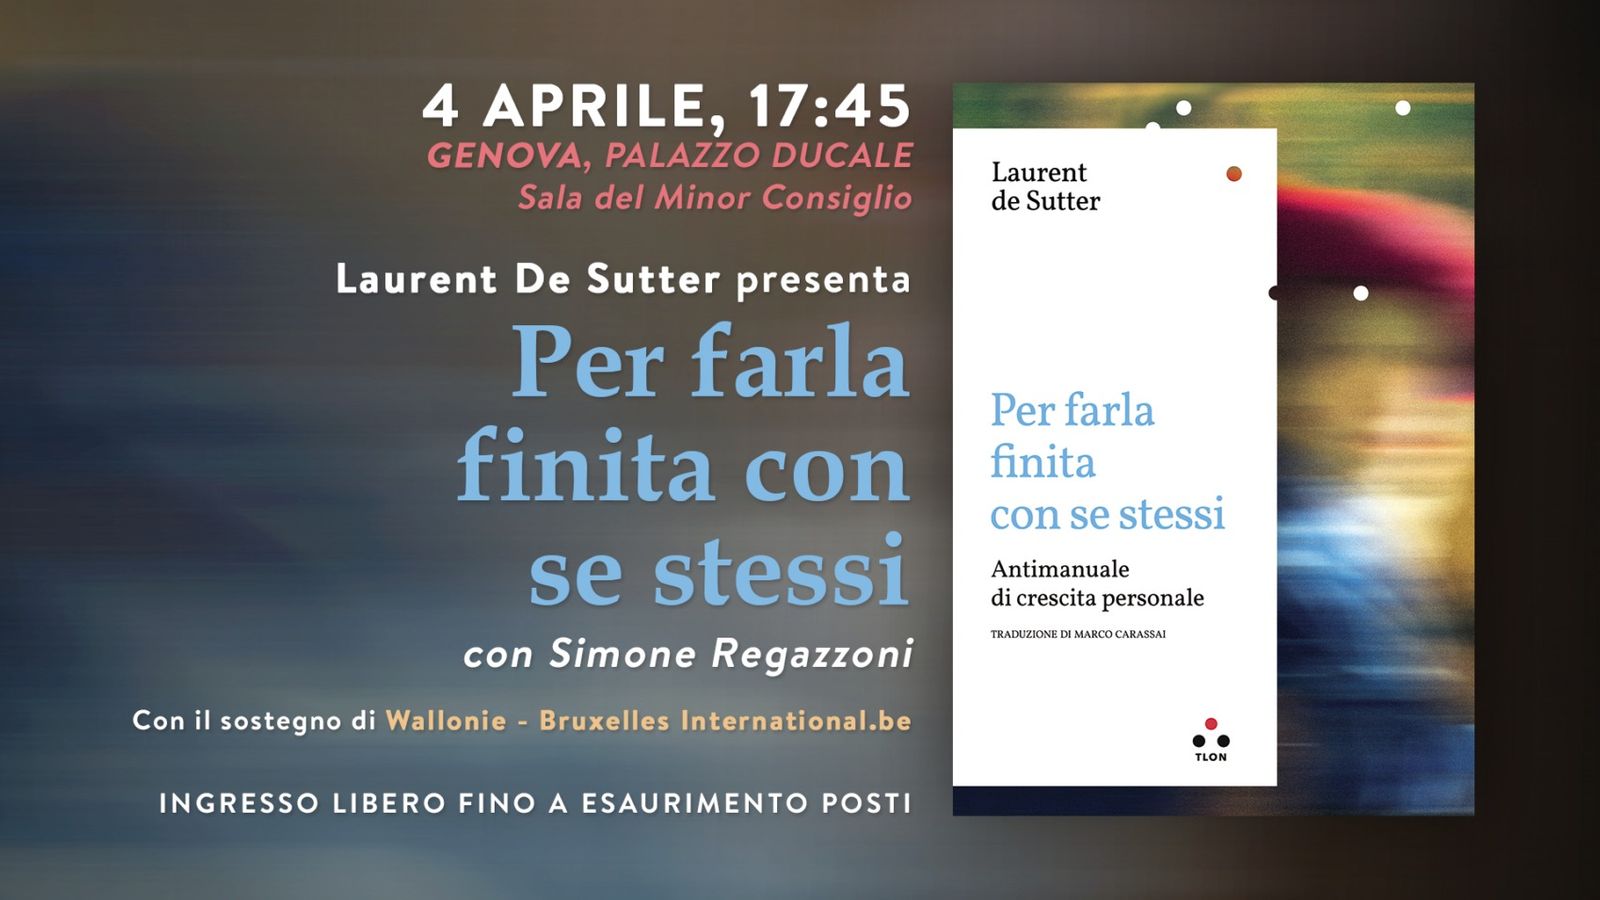 Laurent de Sutter presenta "Per farla finita con se stessi" a Genova